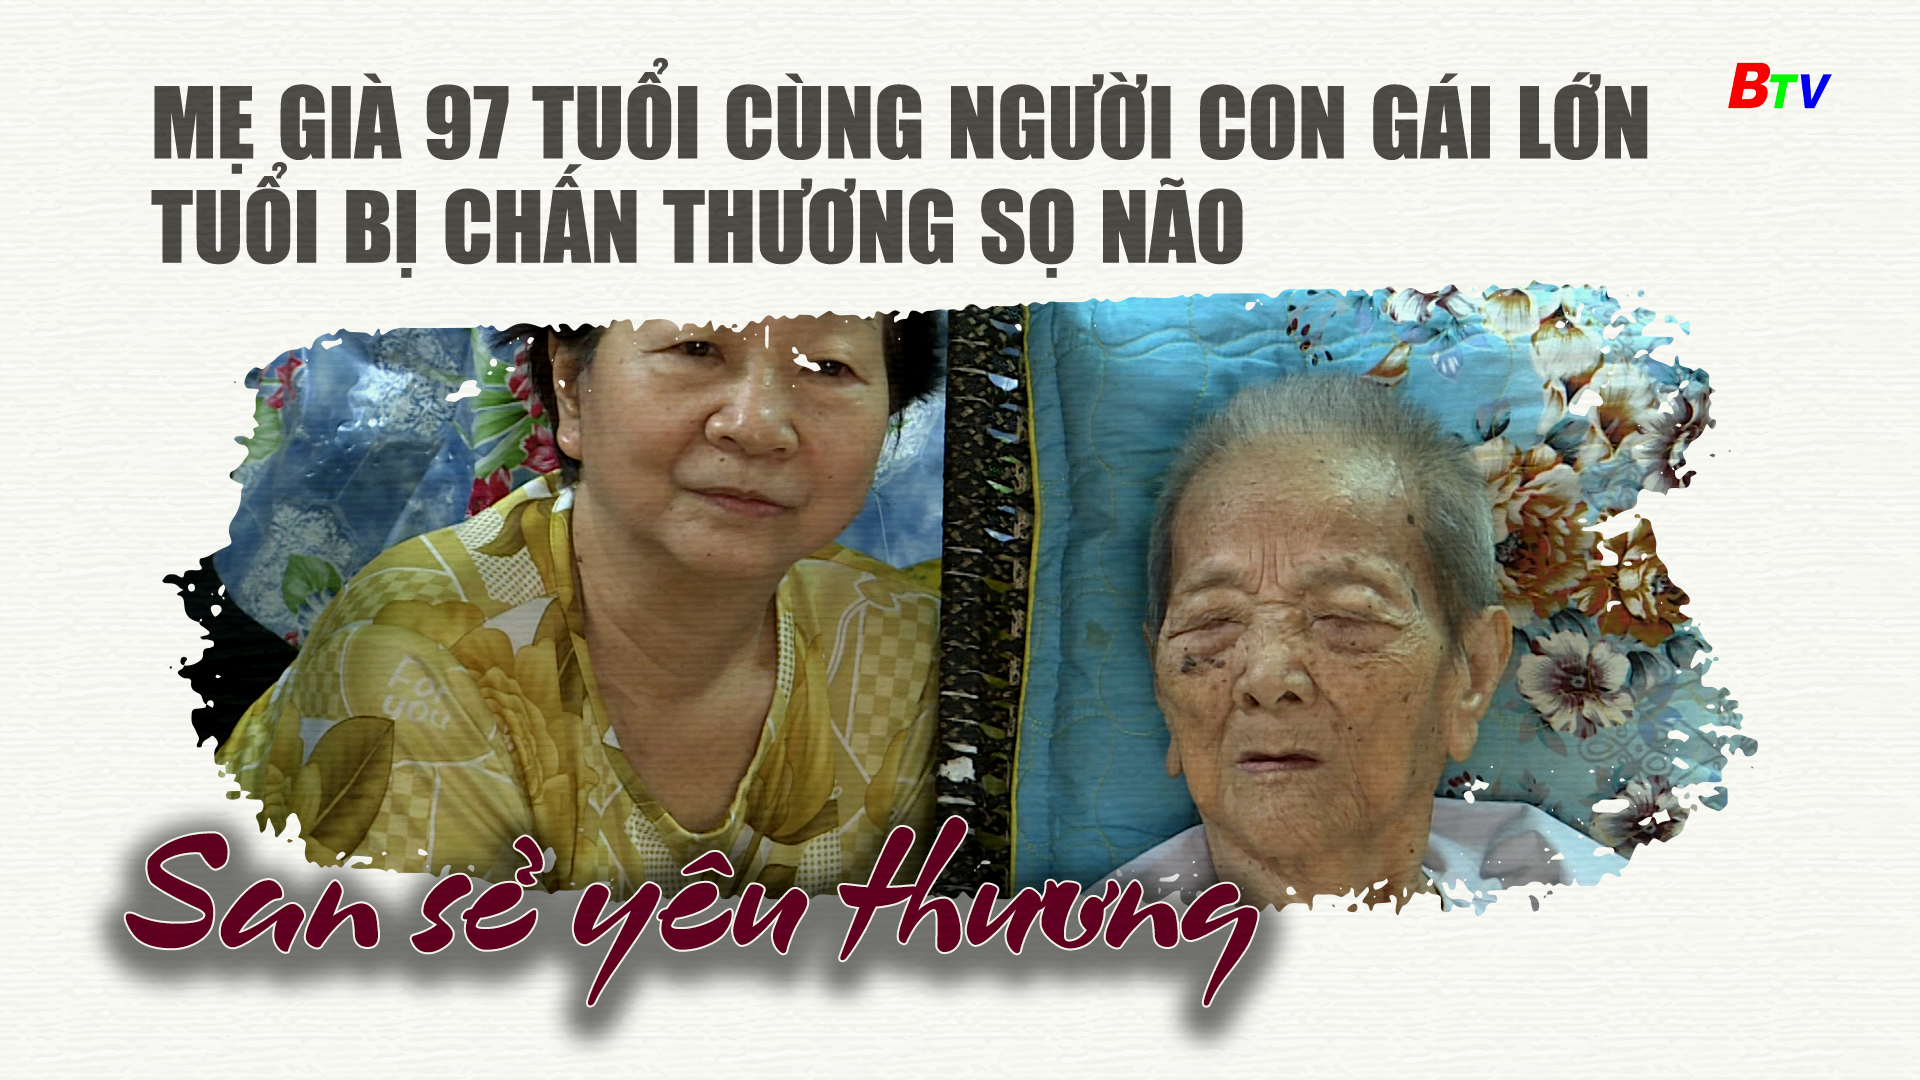 Mẹ già 97 tuổi cùng người con gái lớn tuổi bị chấn thương sọ não